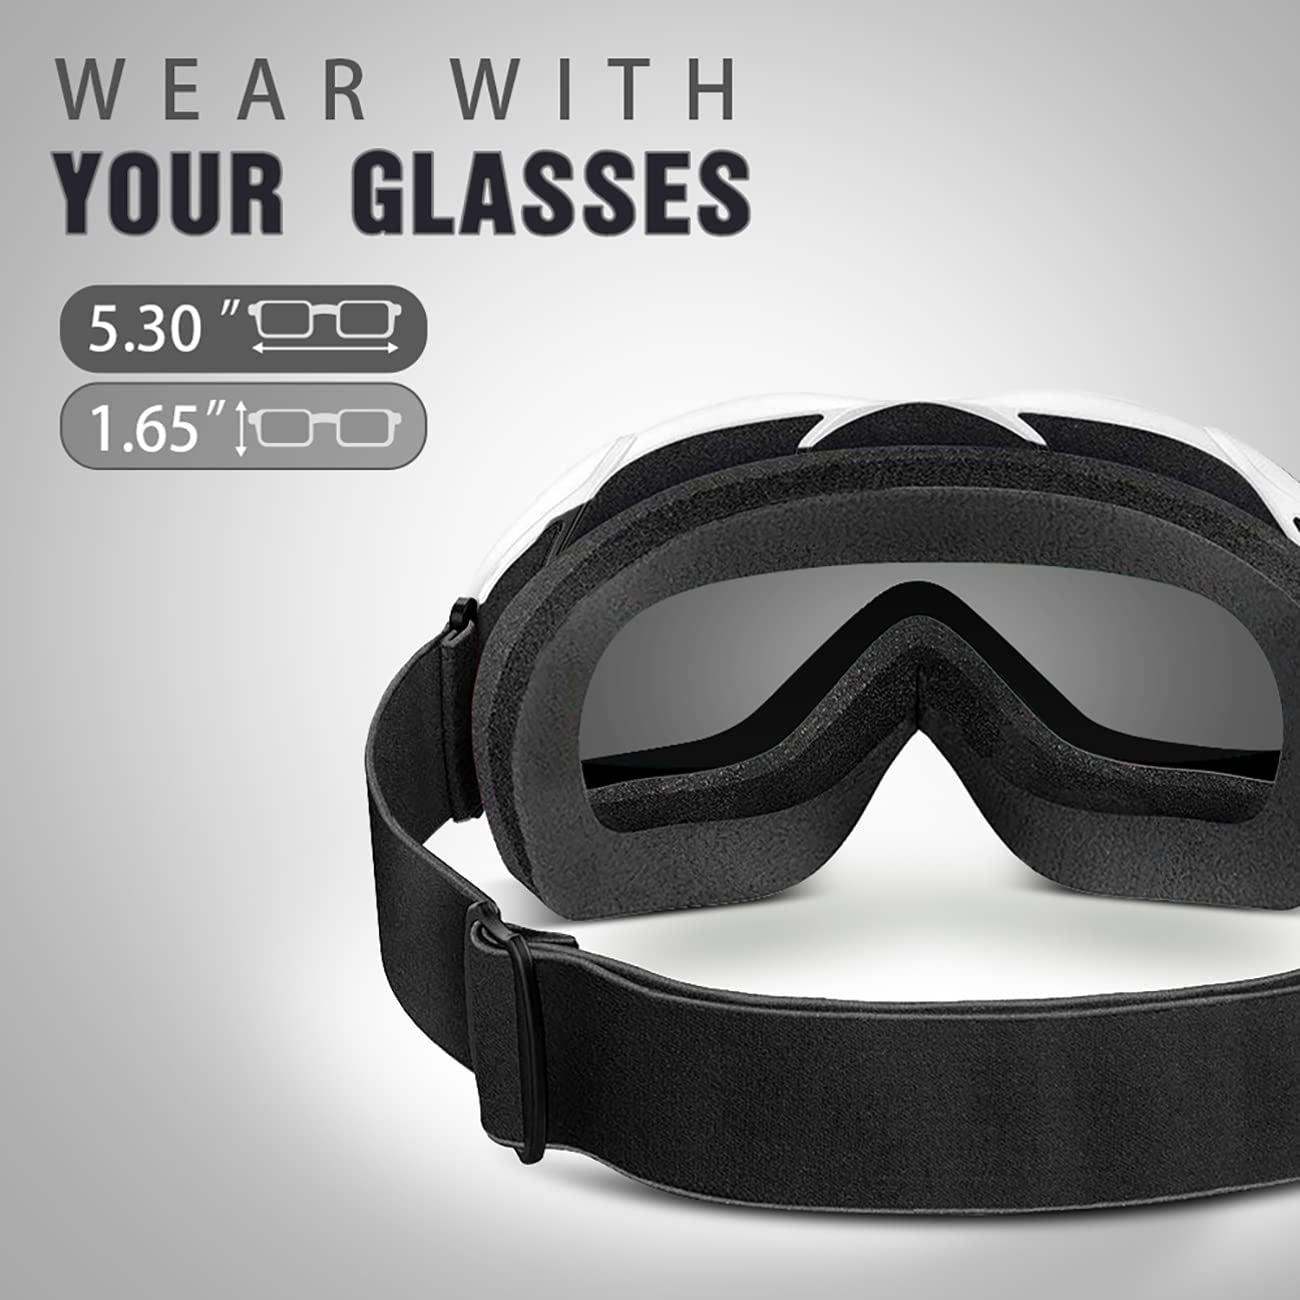 OTG Ski Goggles - over Glasses Ski/Snowboard Goggles for Men, Women & Youth - 100% UV Protection